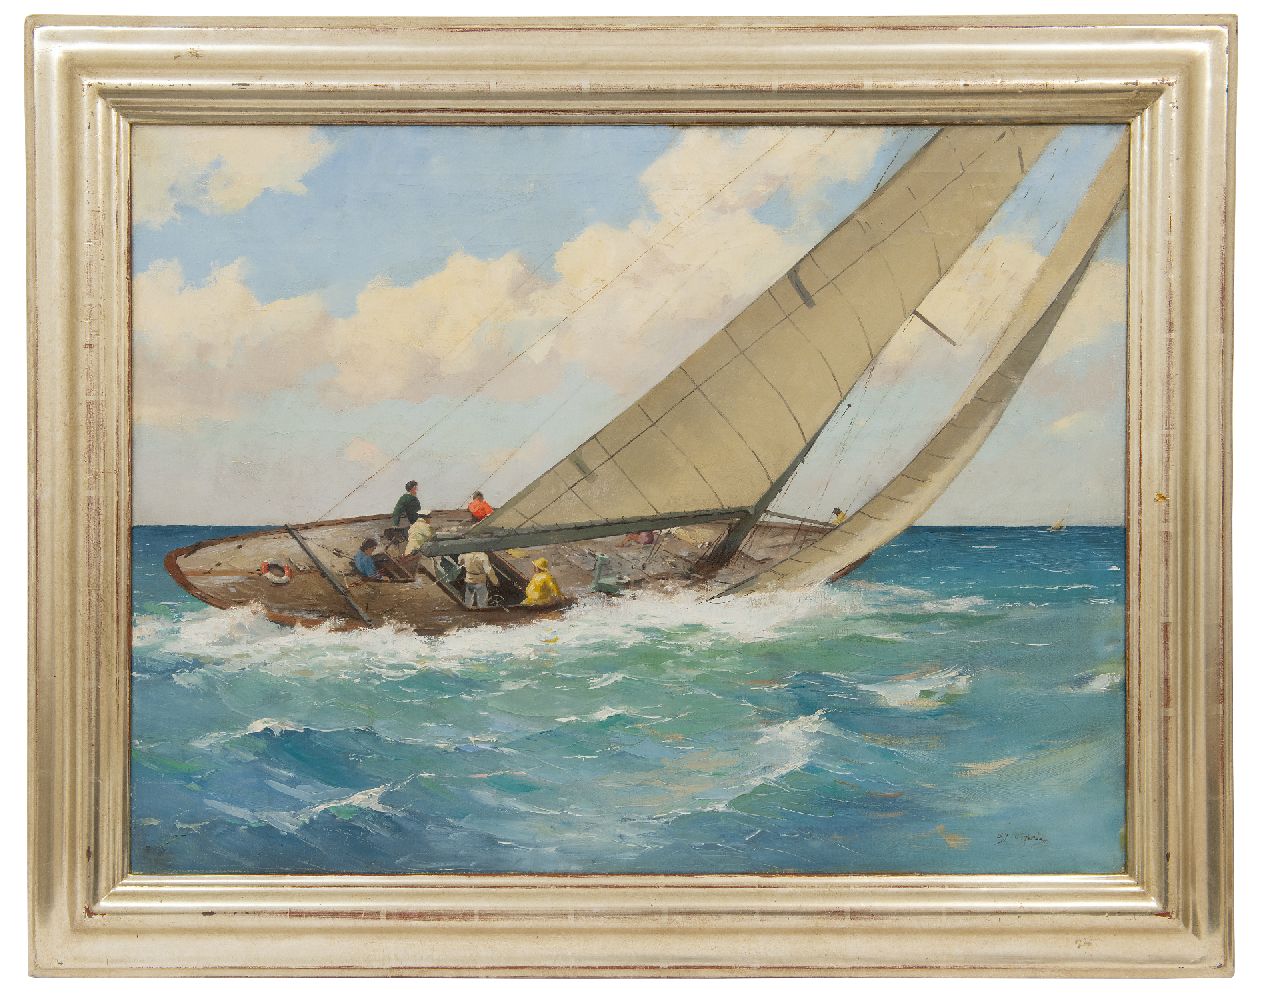 Ligtelijn E.J.  | Evert Jan Ligtelijn, Zeilschip in actie, olieverf op doek 60,2 x 79,6 cm, gesigneerd rechtsonder